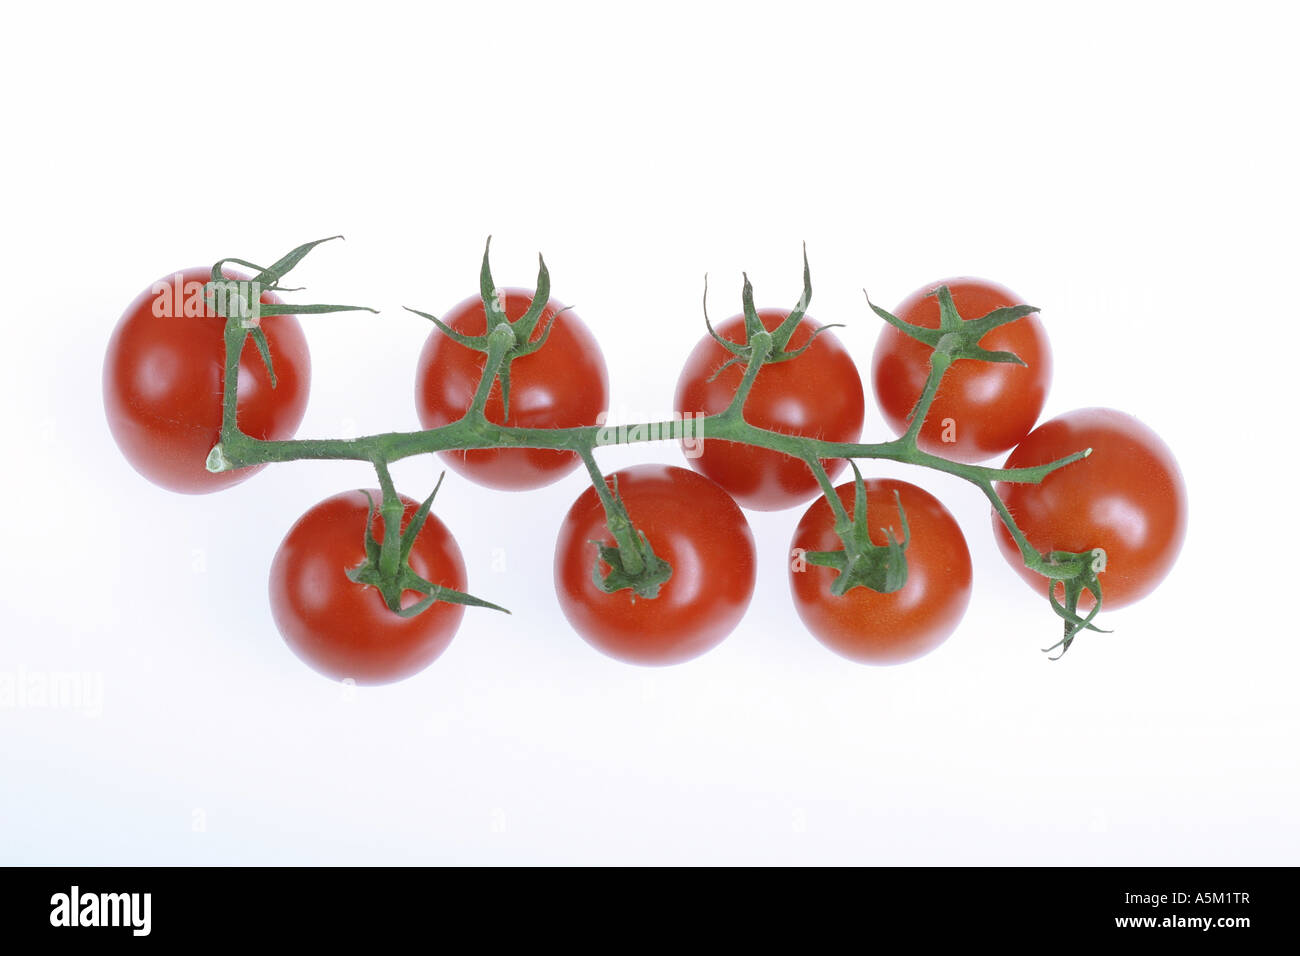 Les tomates de vigne sur fond blanc Banque D'Images